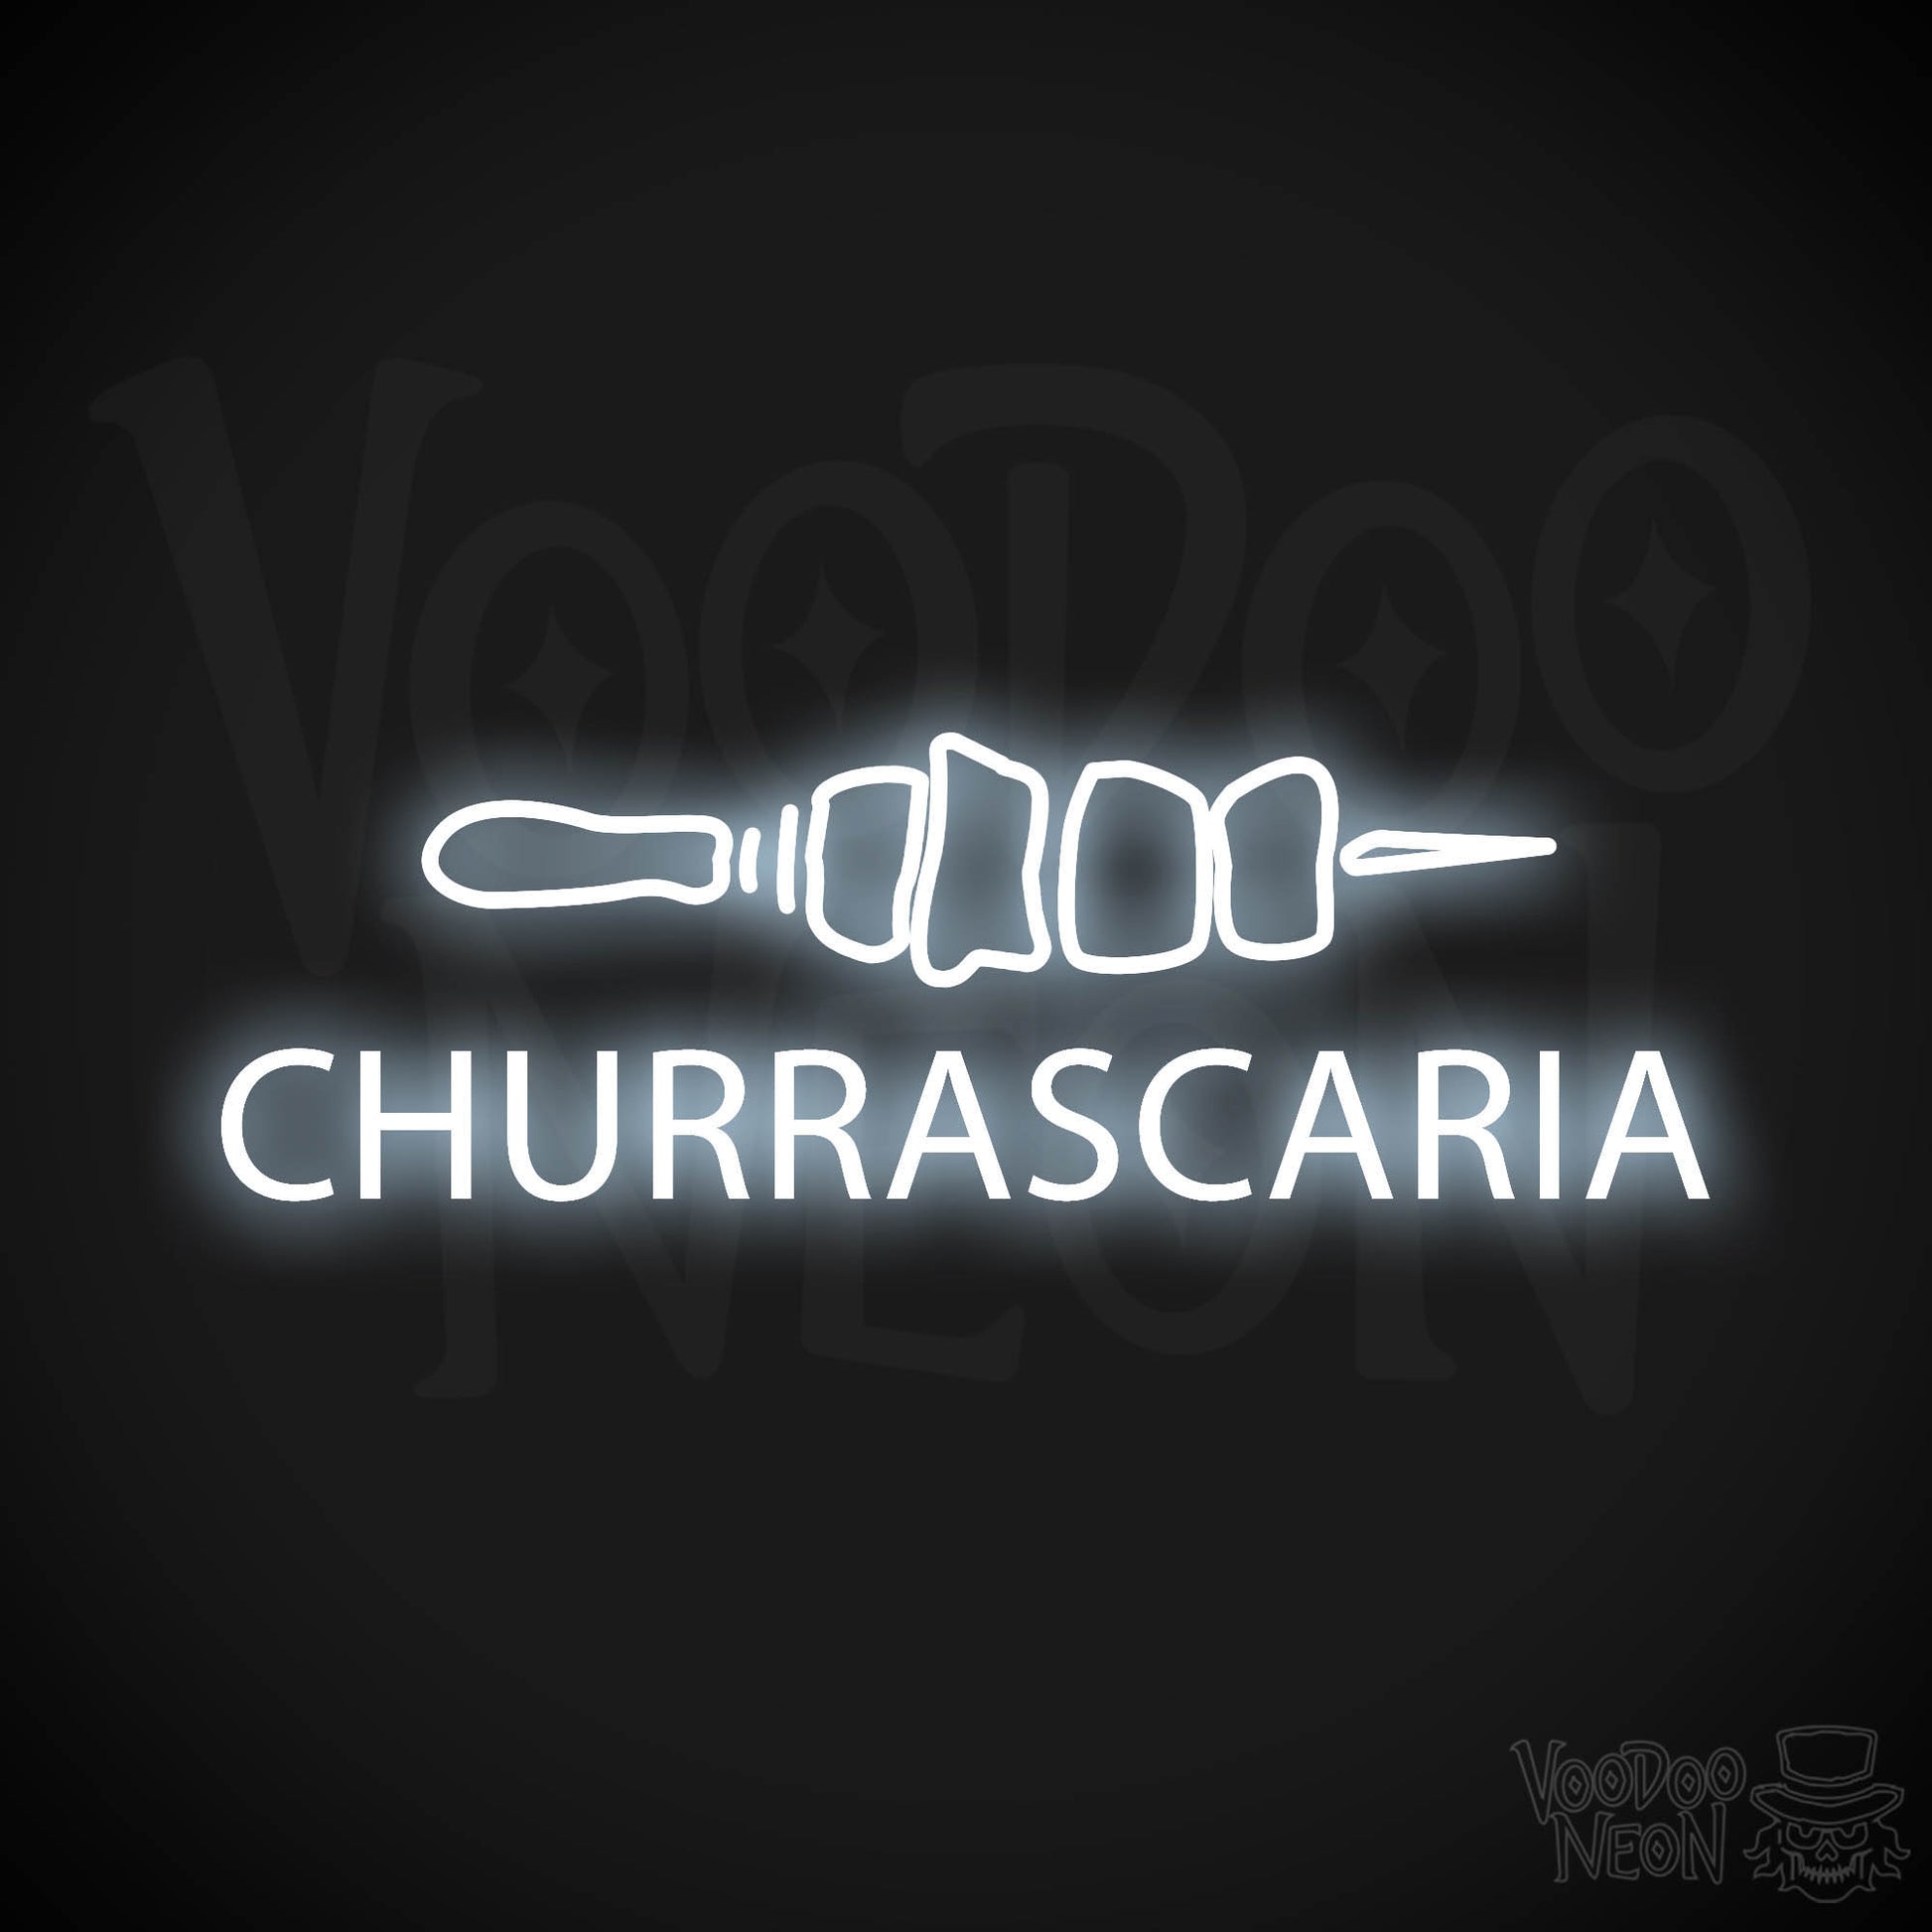 Churrascaria LED Neon - Cool White